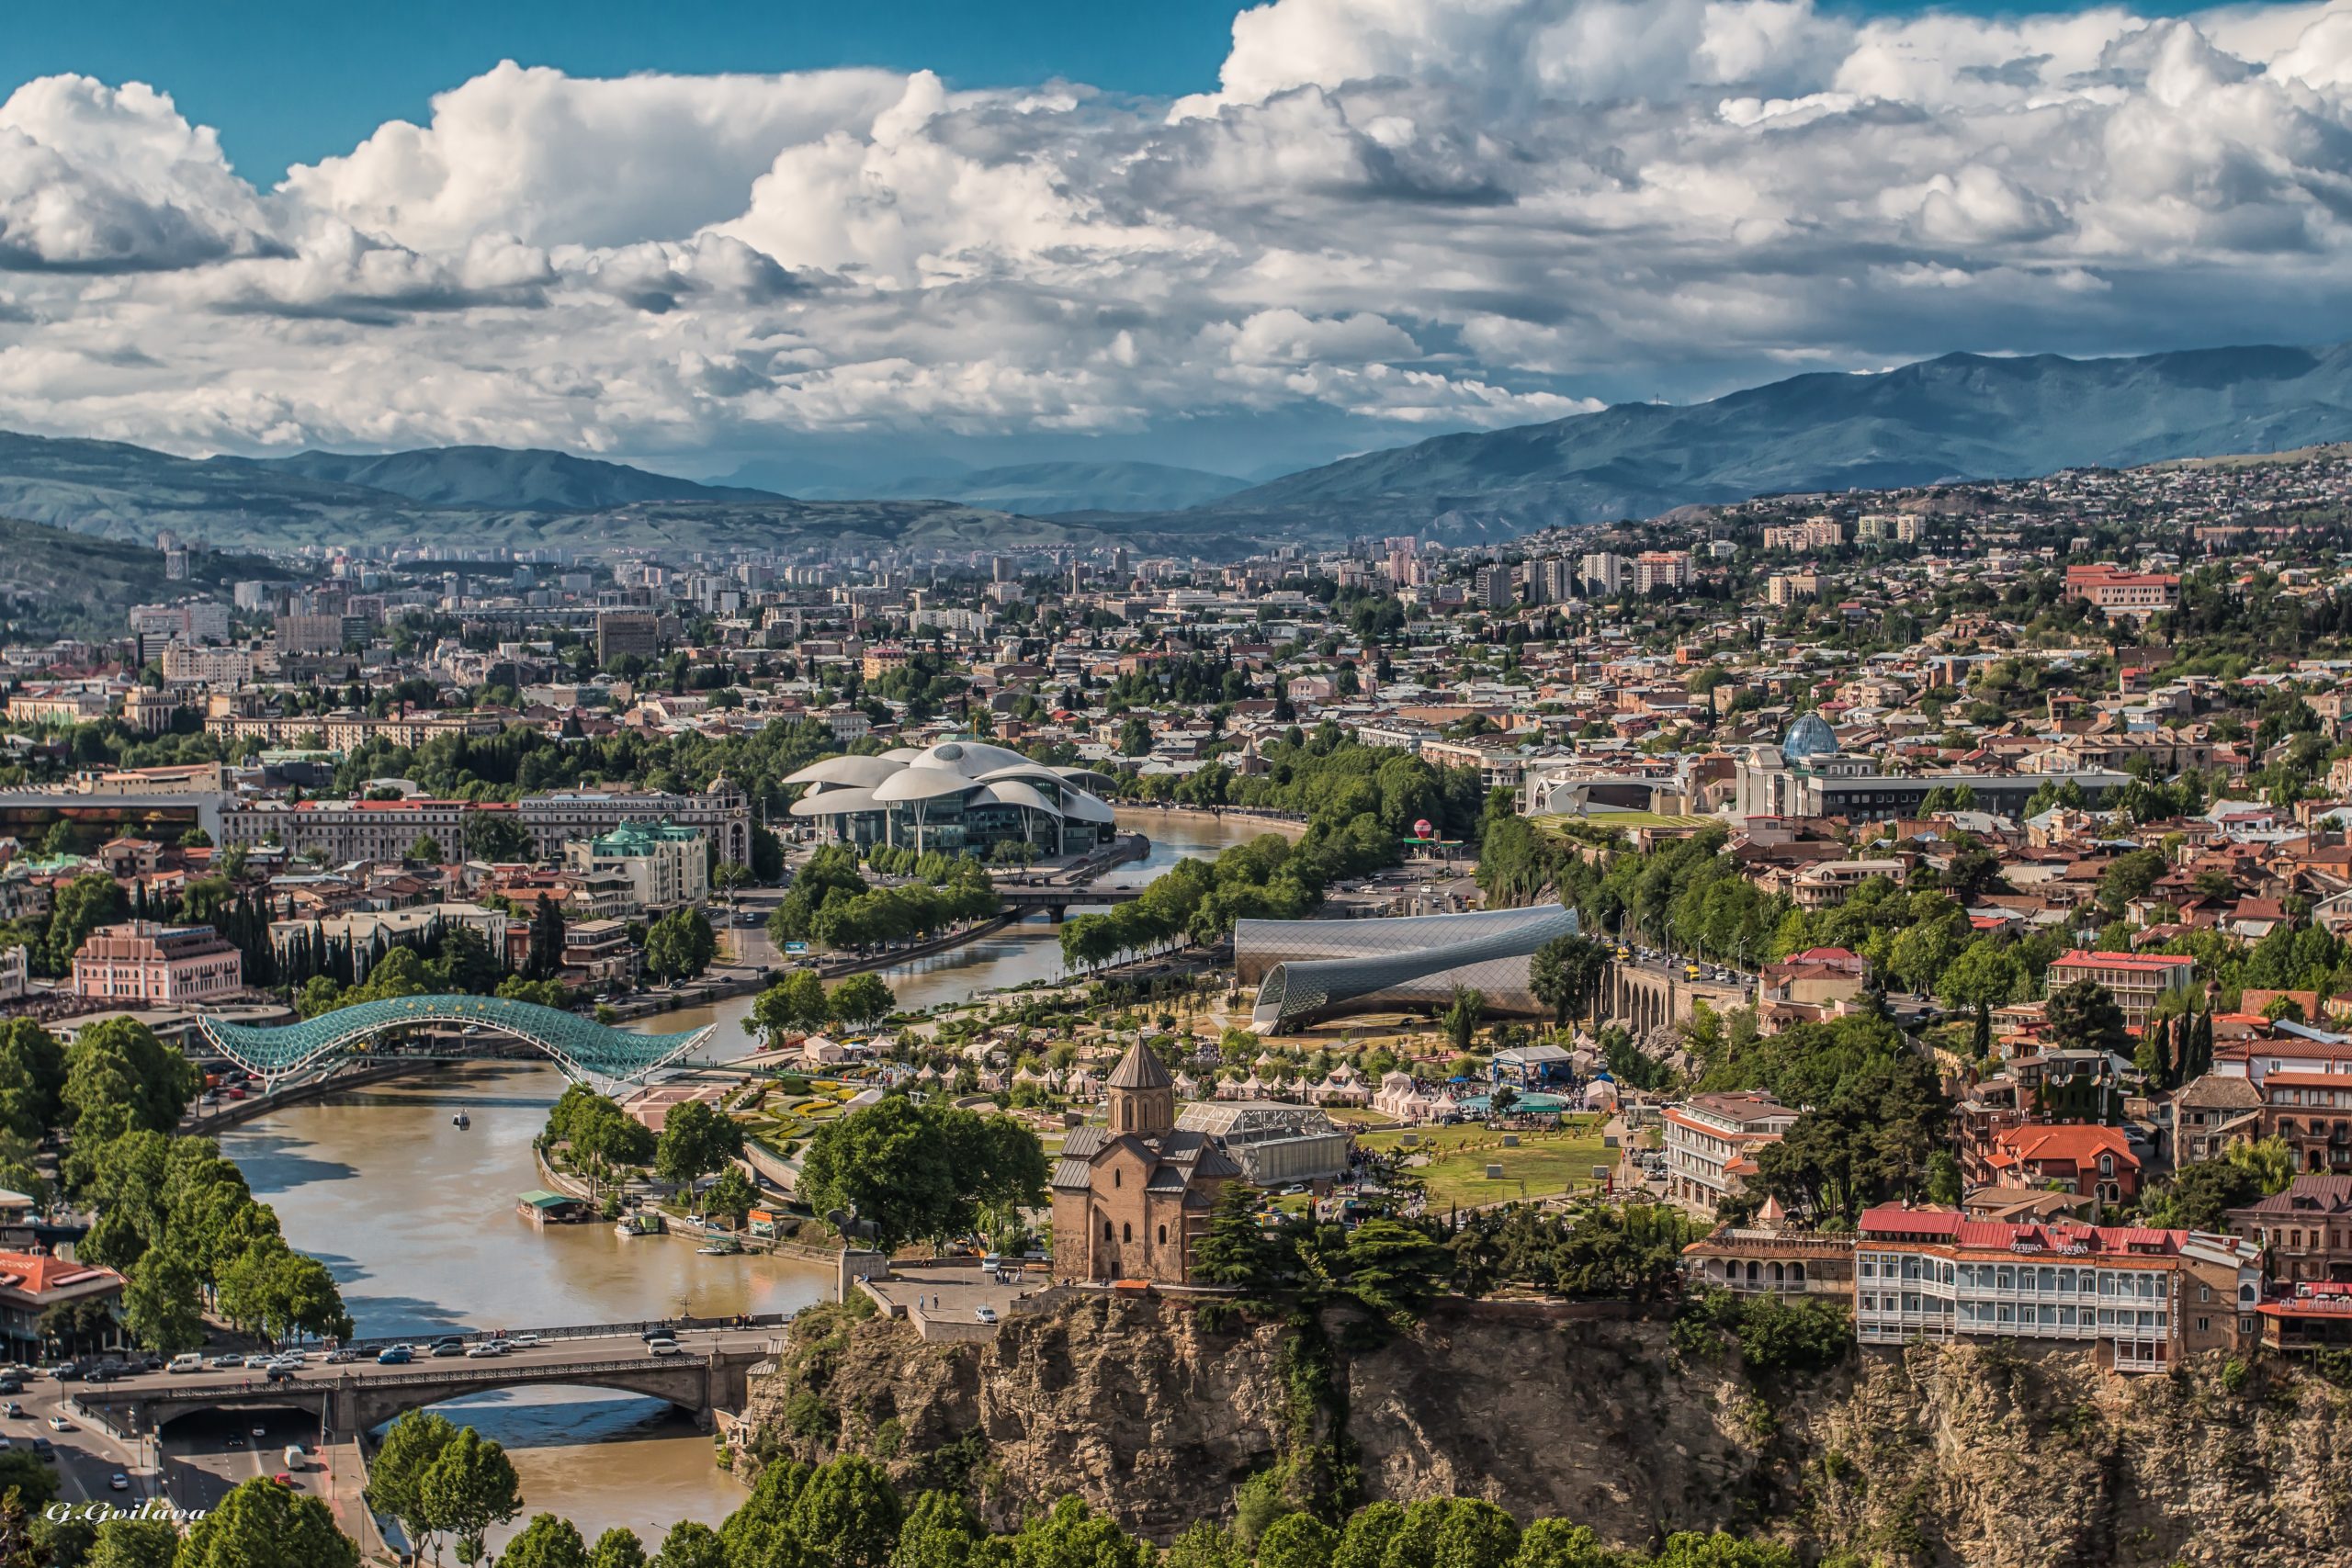 La città di Tbilisi, in Georgia, ripresa dall'alto. C'è un fiume che l'attraversa, si vedono i ponti, le macchine e i tetti delle case. In lontananza ci sono delle montagne e delle nuvole compatte